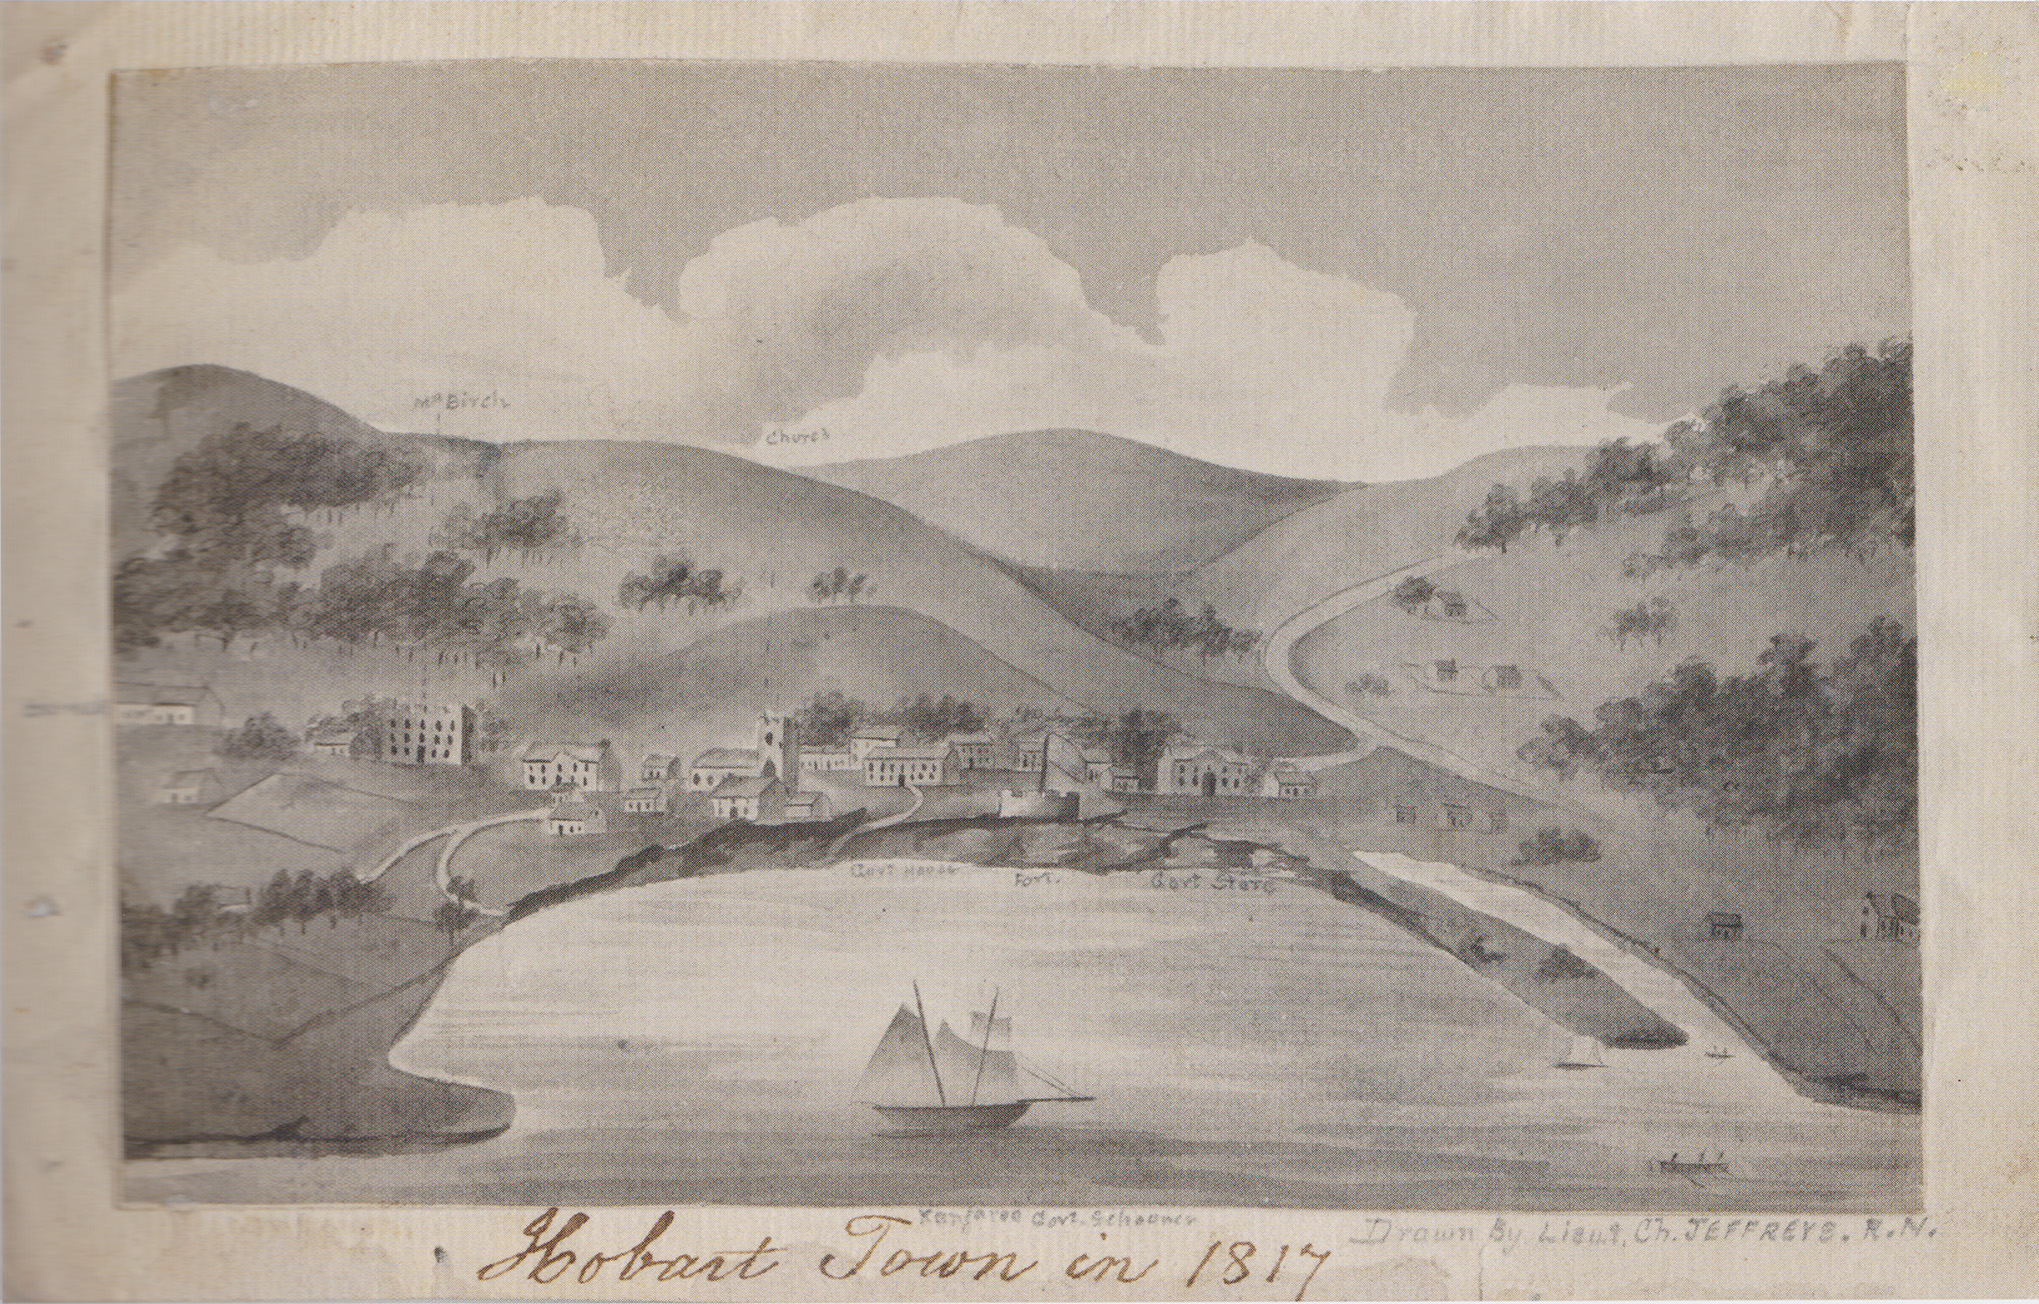 Hobart Town in 1817 – Charles Jeffreys